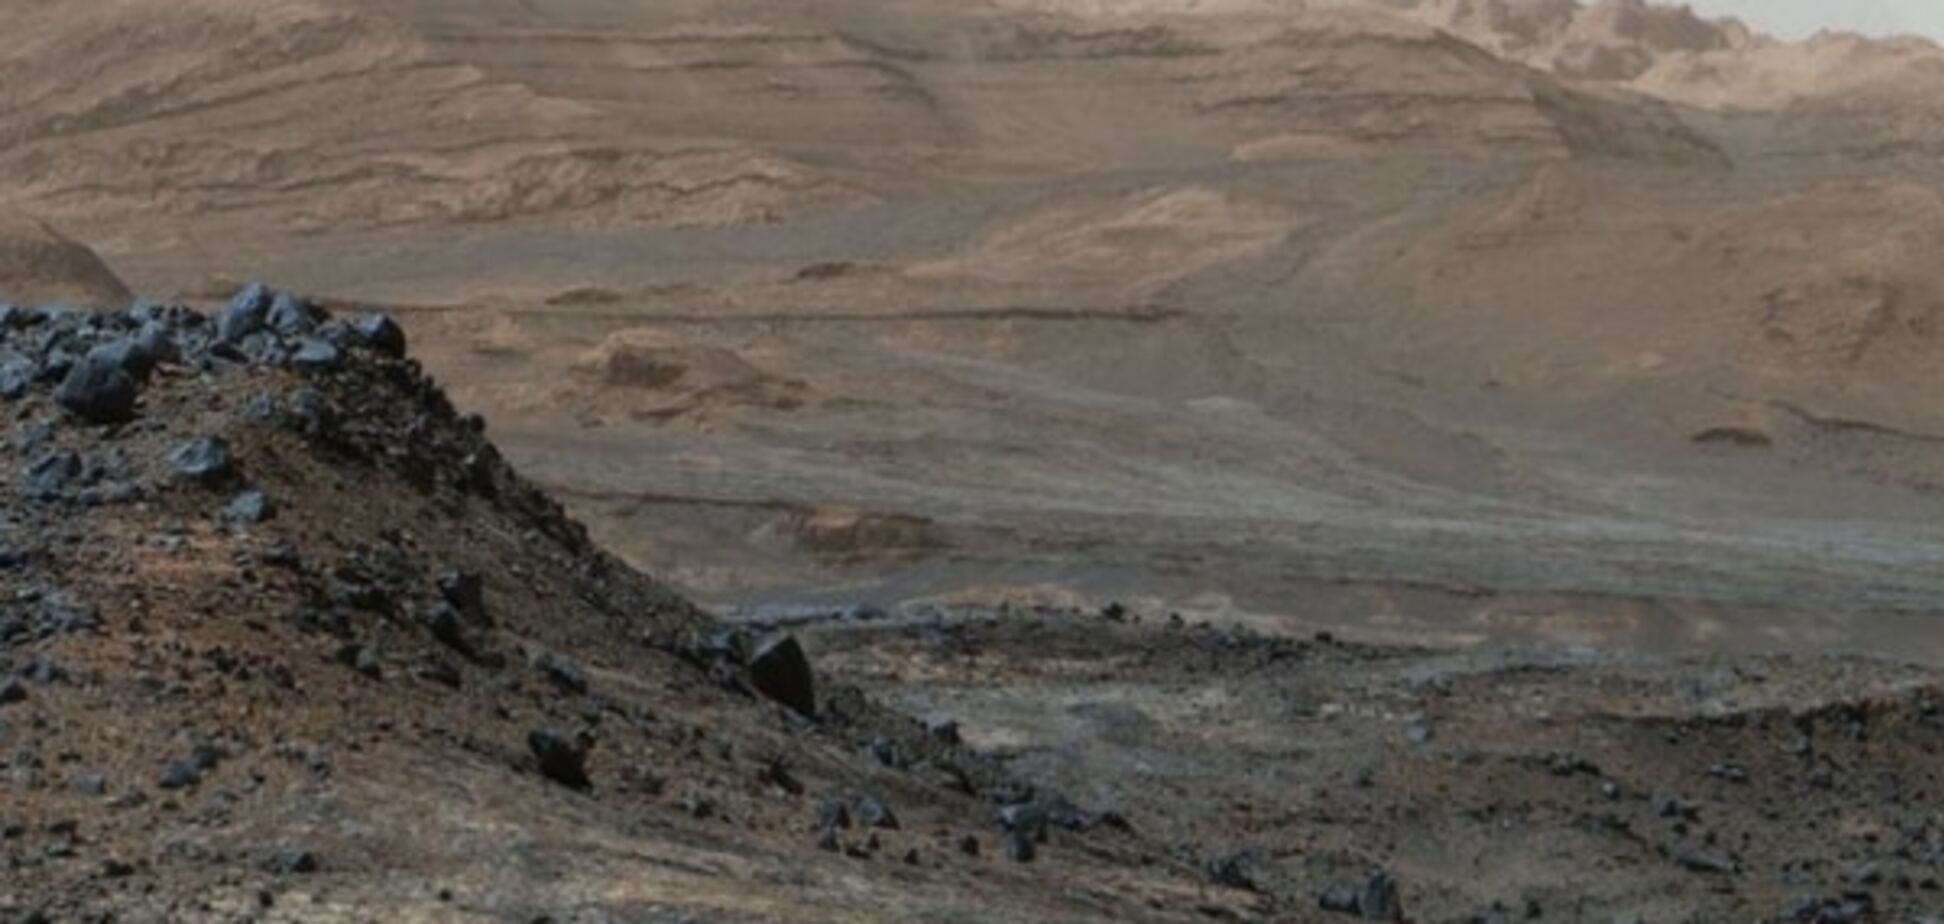 Стартовал эксперимент NASA по выживанию людей на Марсе: видеофакт